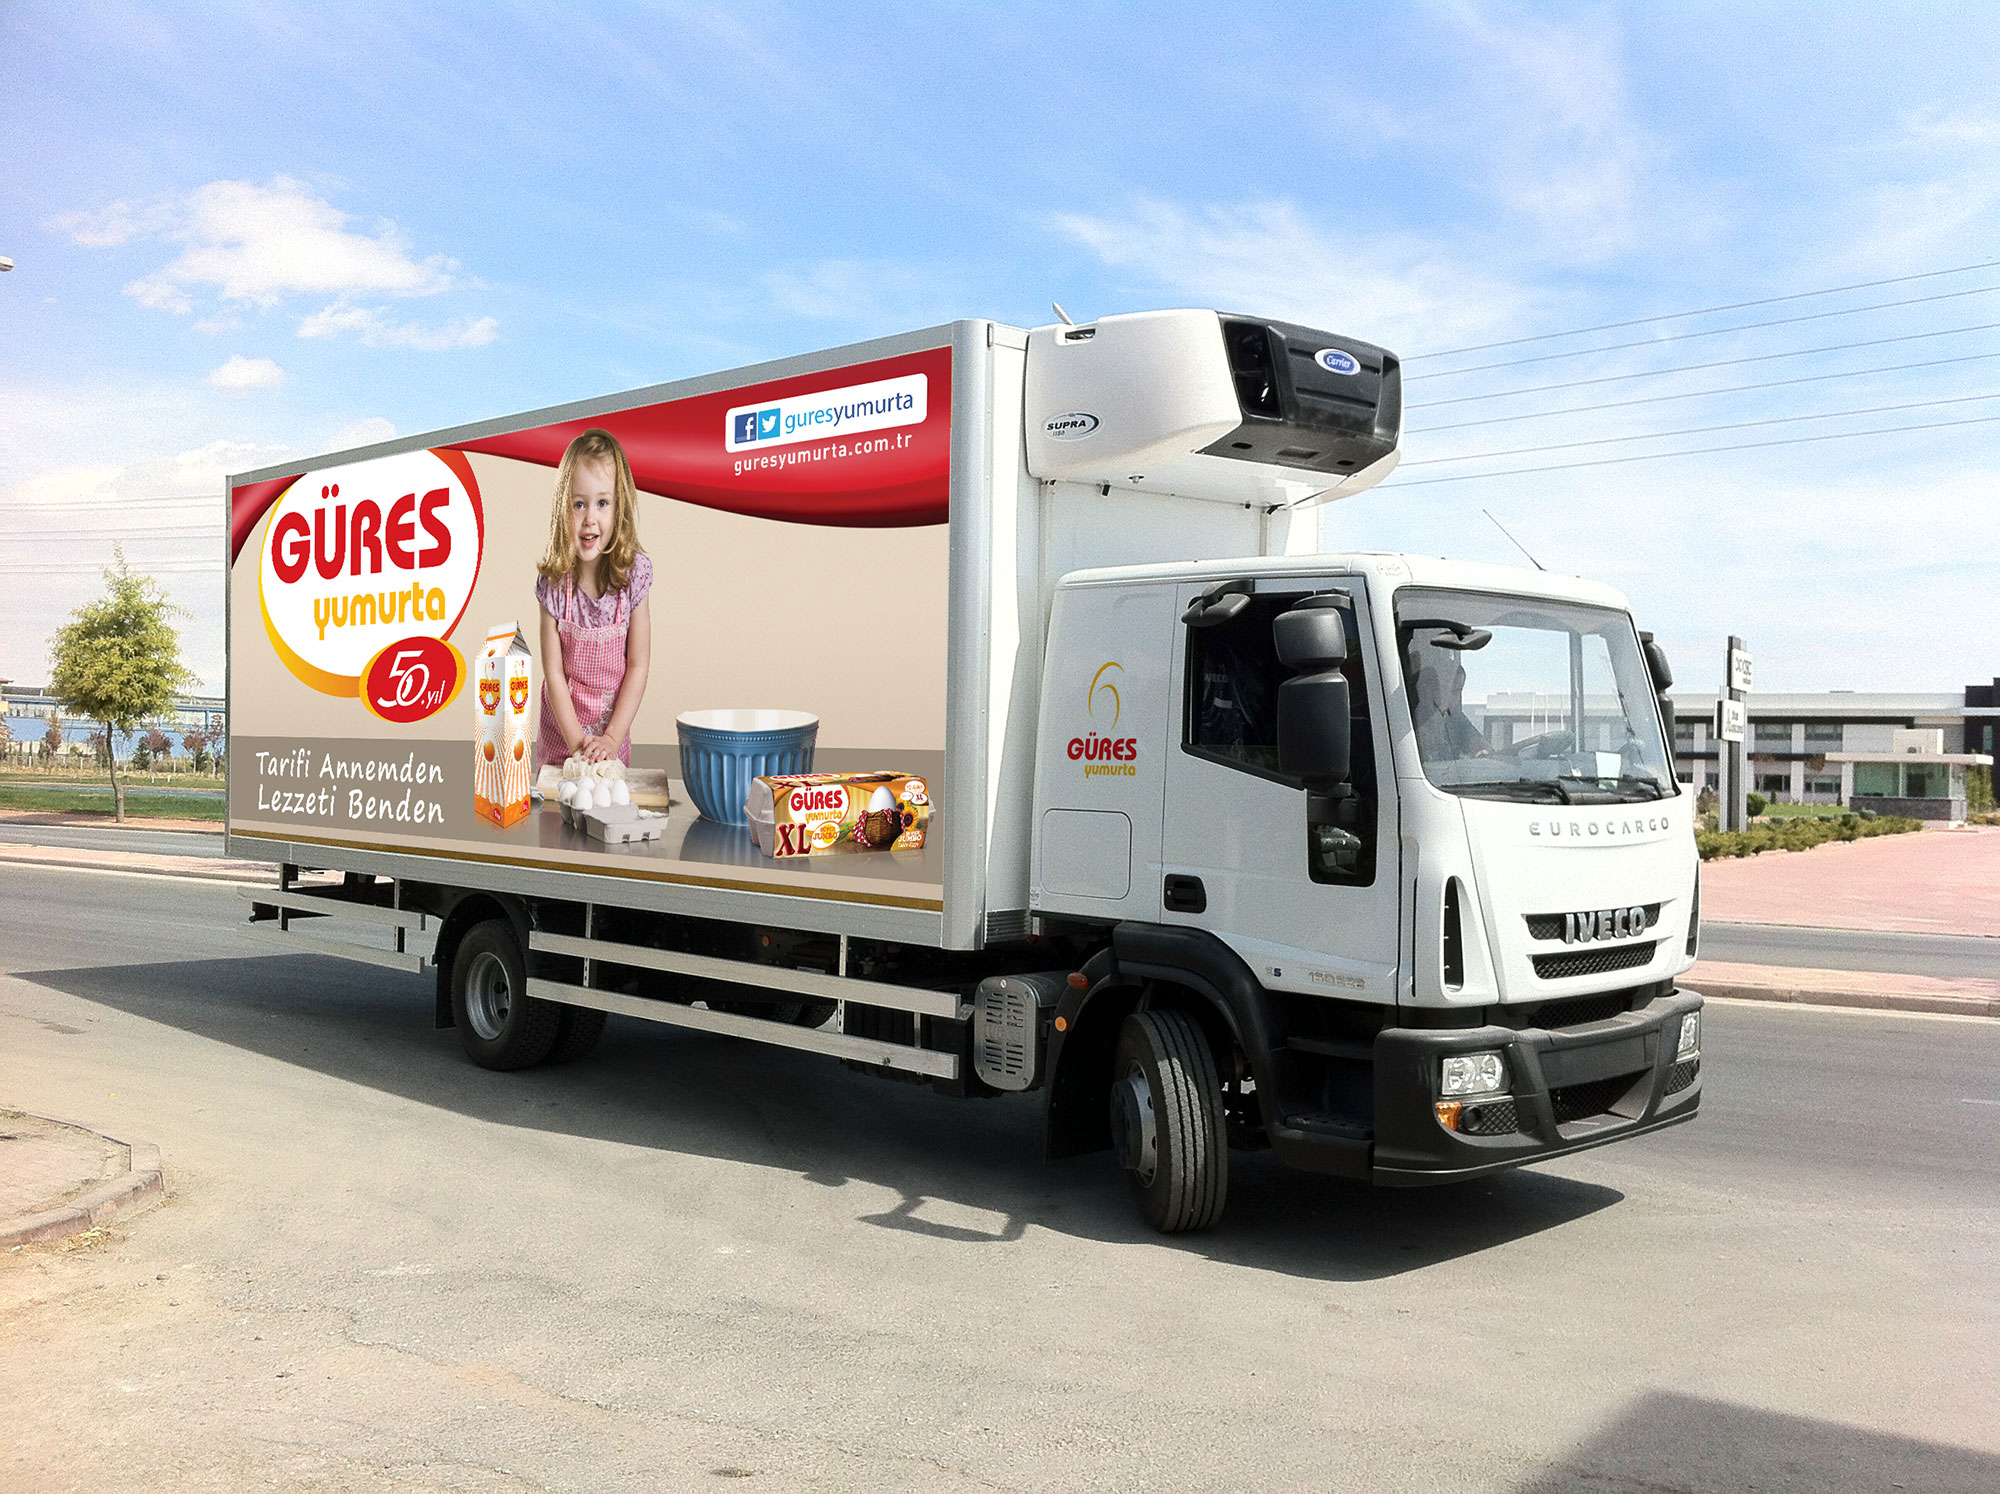 Gures Vehicle Wrap - KONSEPTIZ Advertising Agency in Turkey